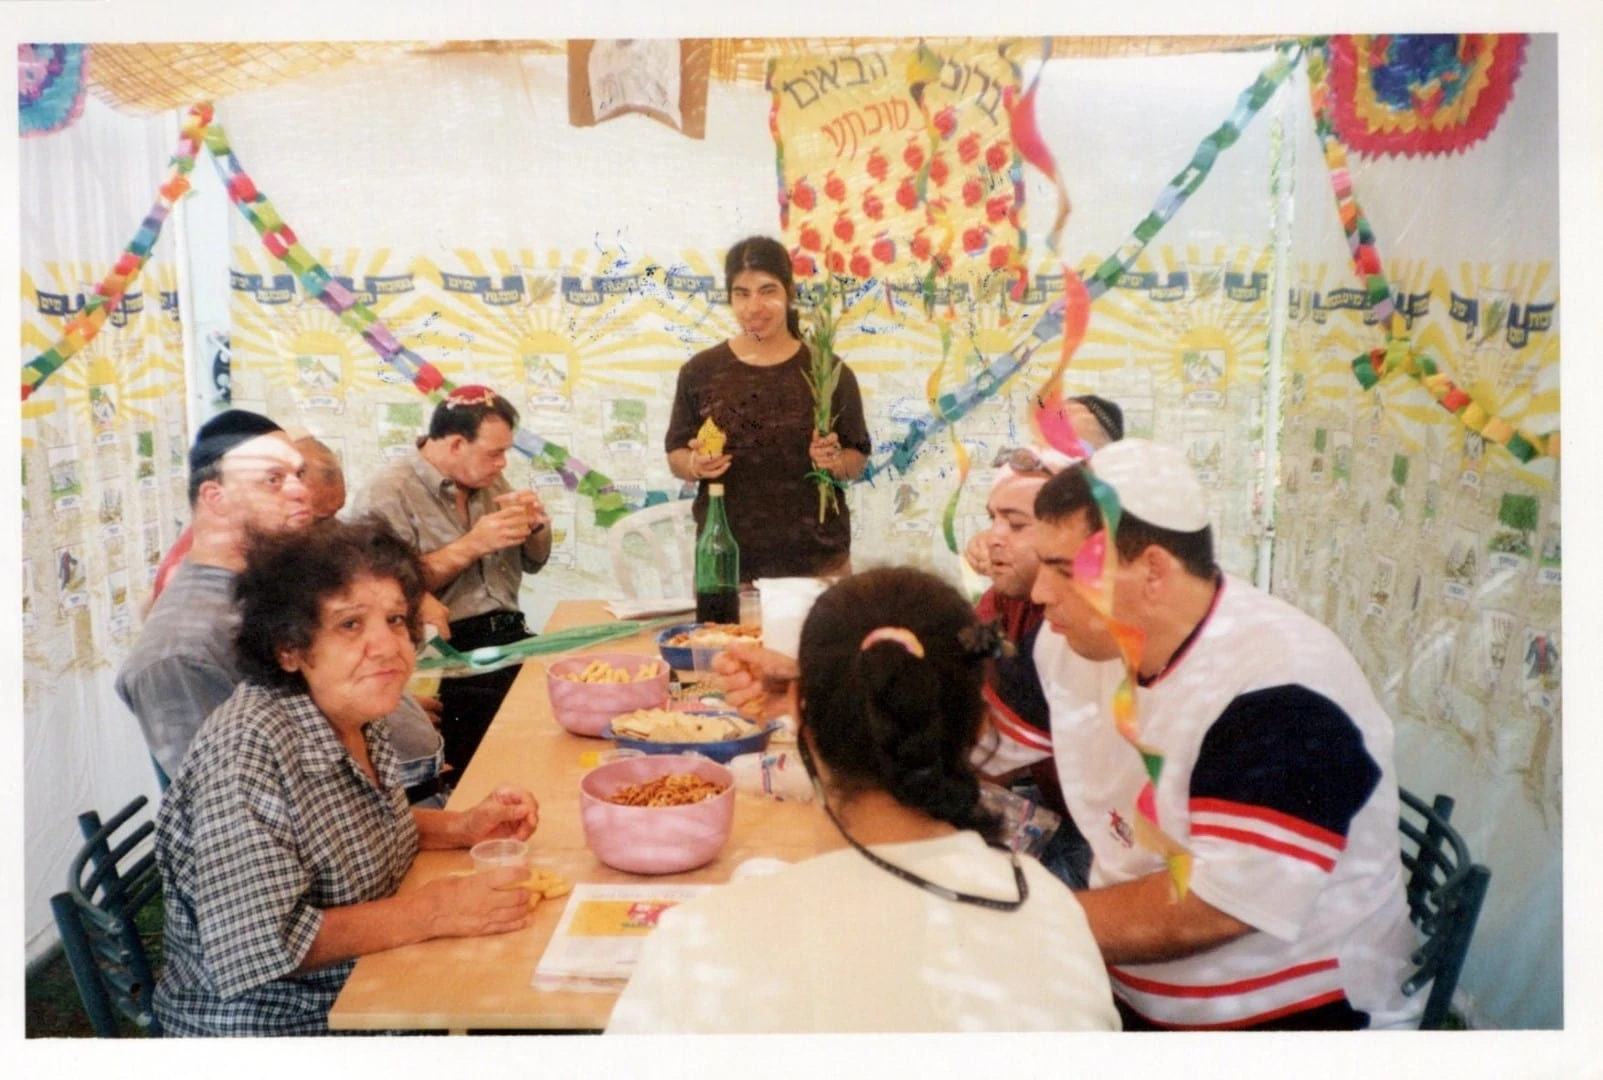 The hostel’s residents having Sukkot feast